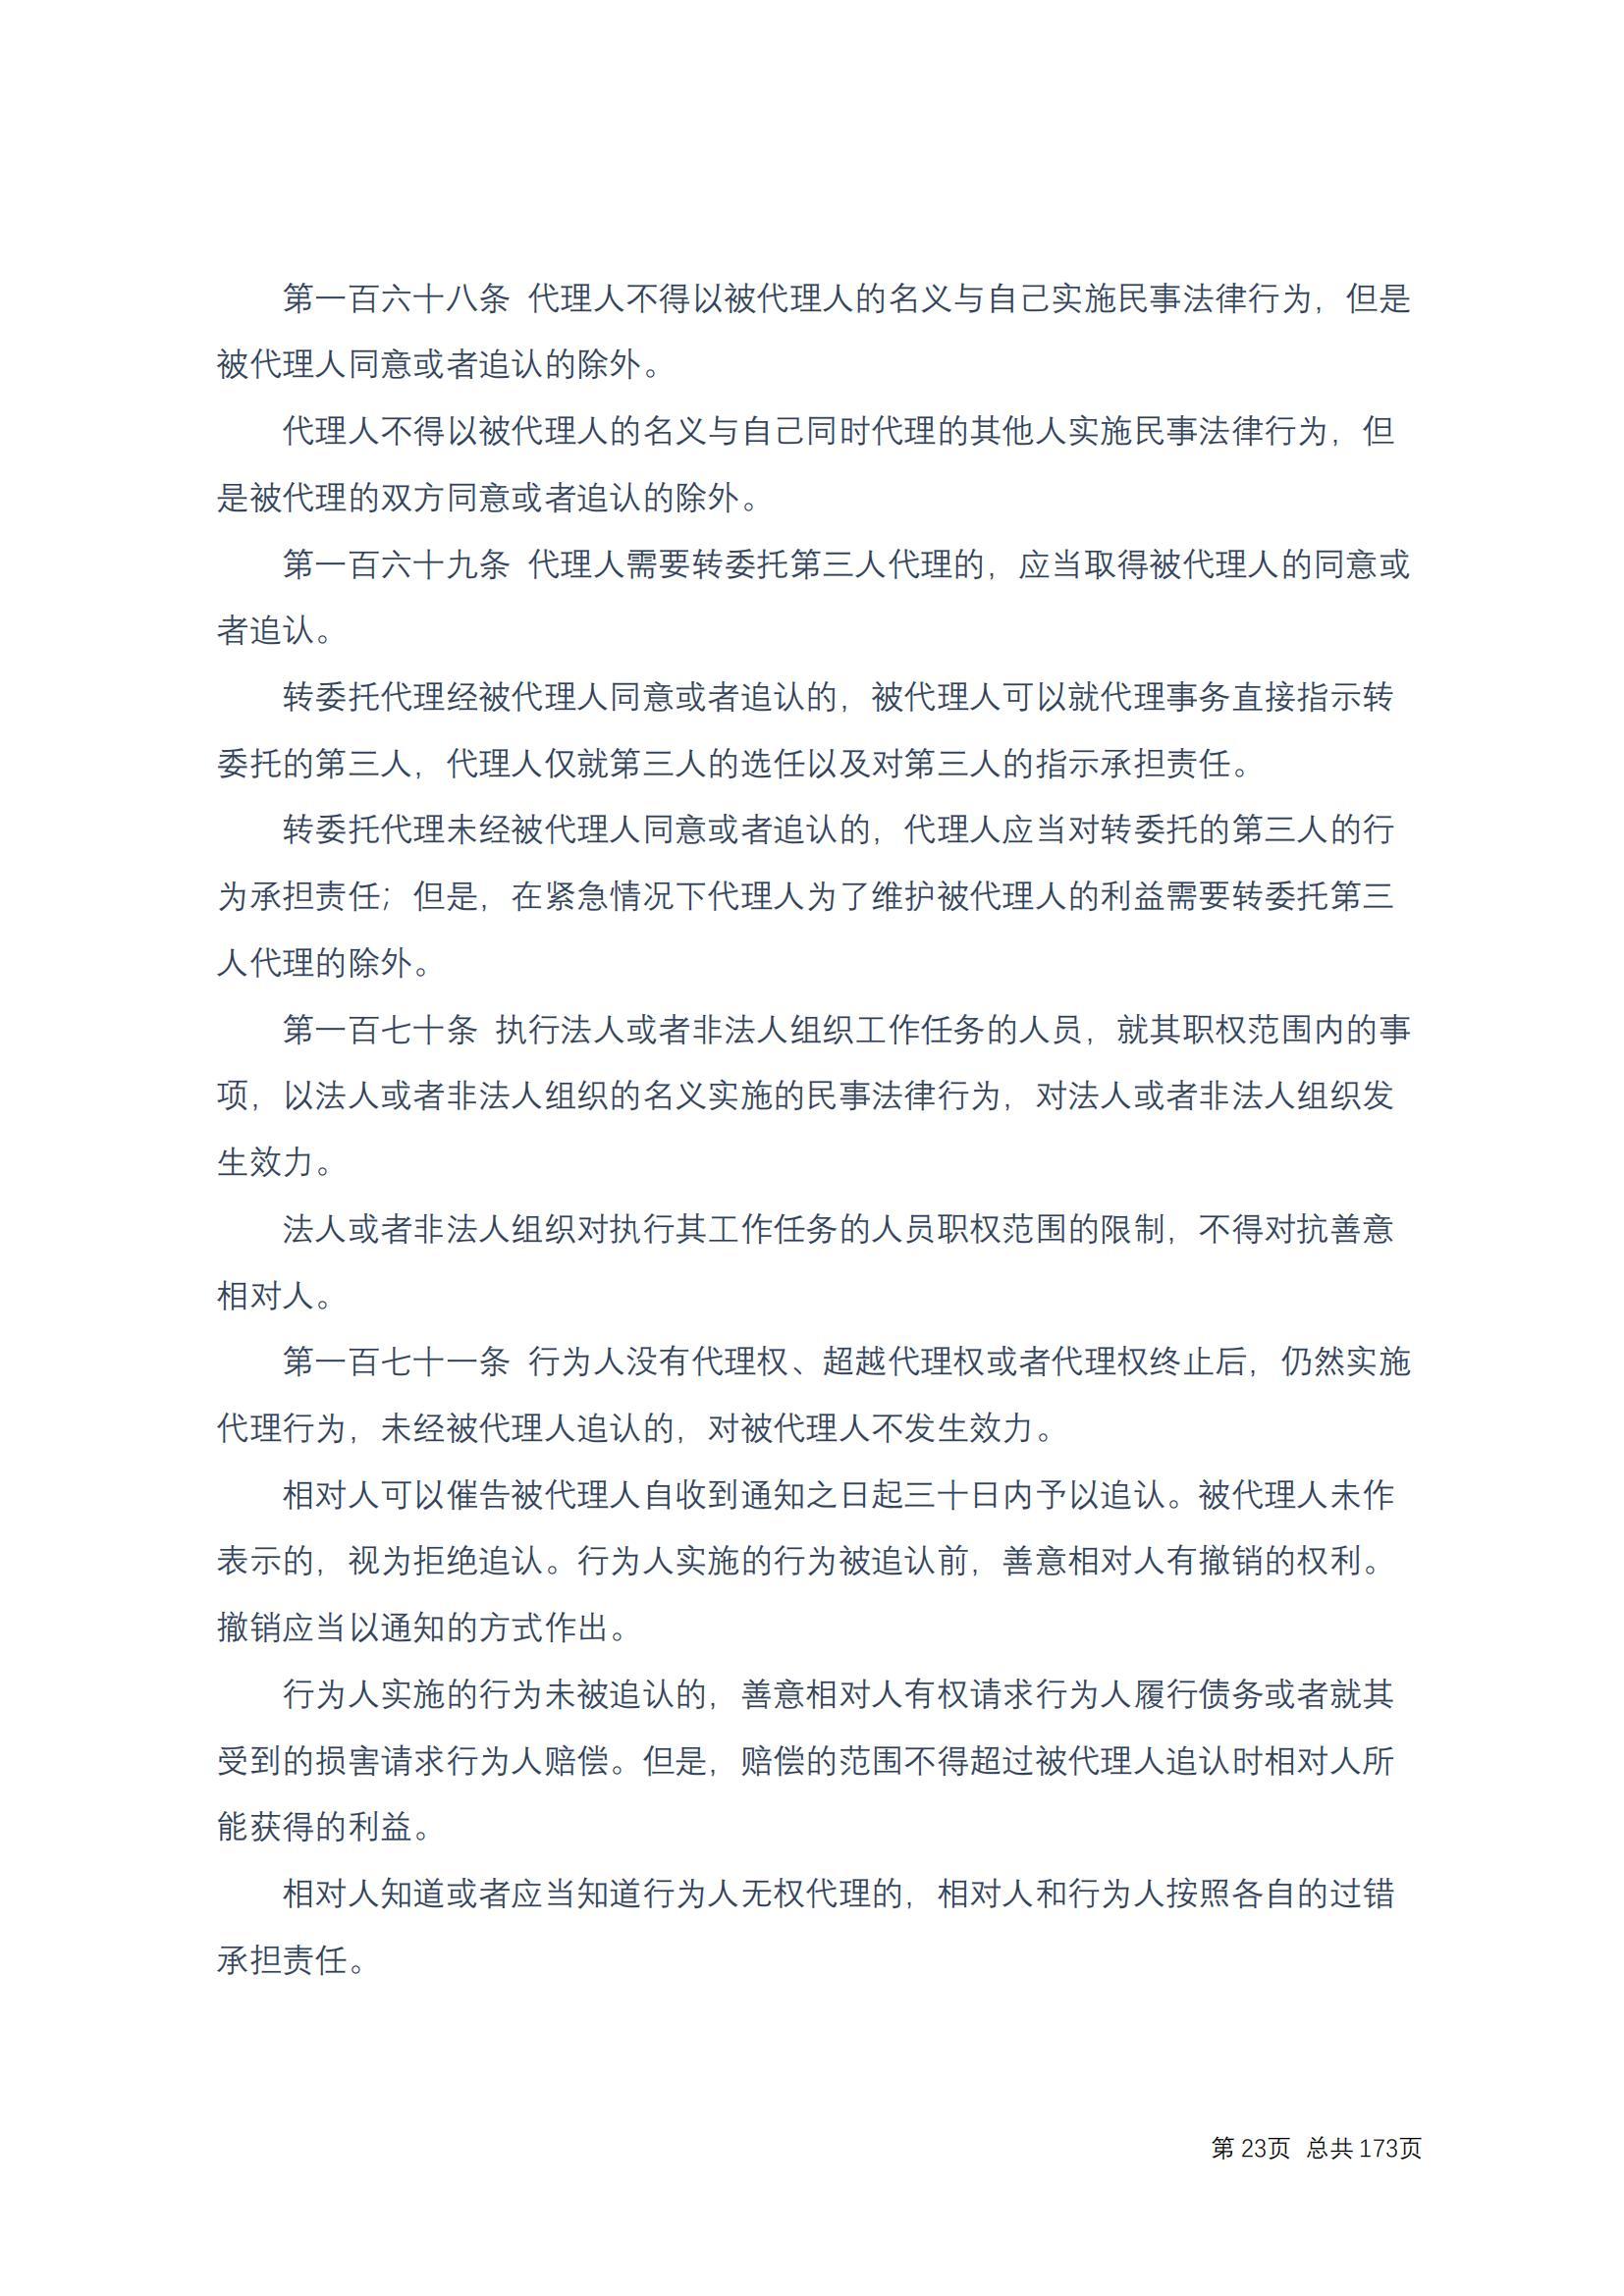 中华人民共和国民法典 修改过_22